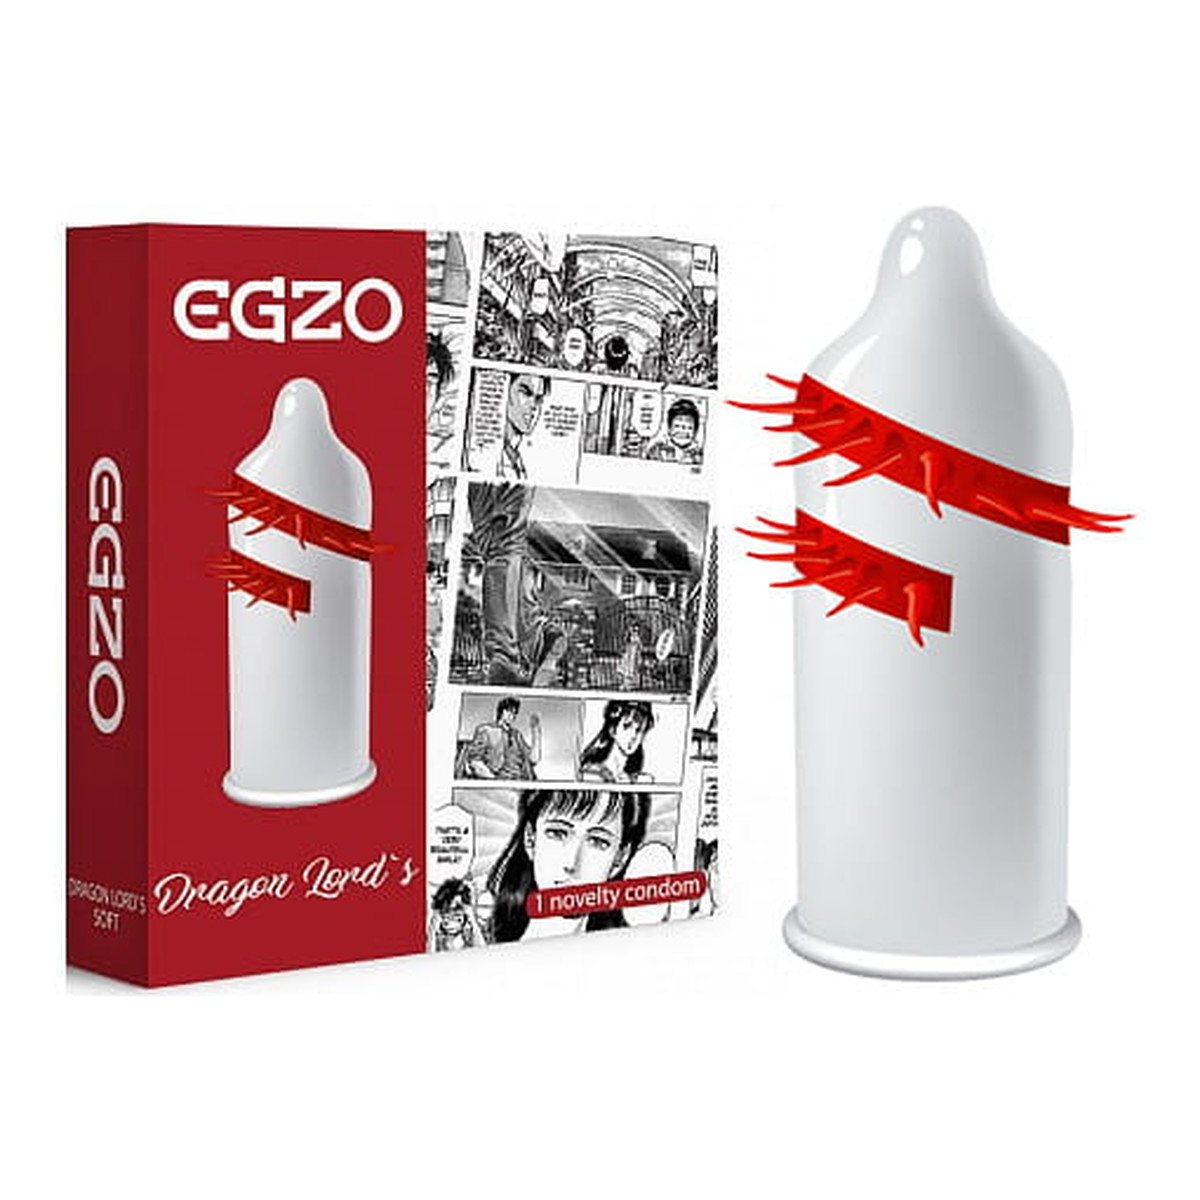 Egzo Dragon lord's prezerwatywa z pieszczącymi kolcami soft 1szt.